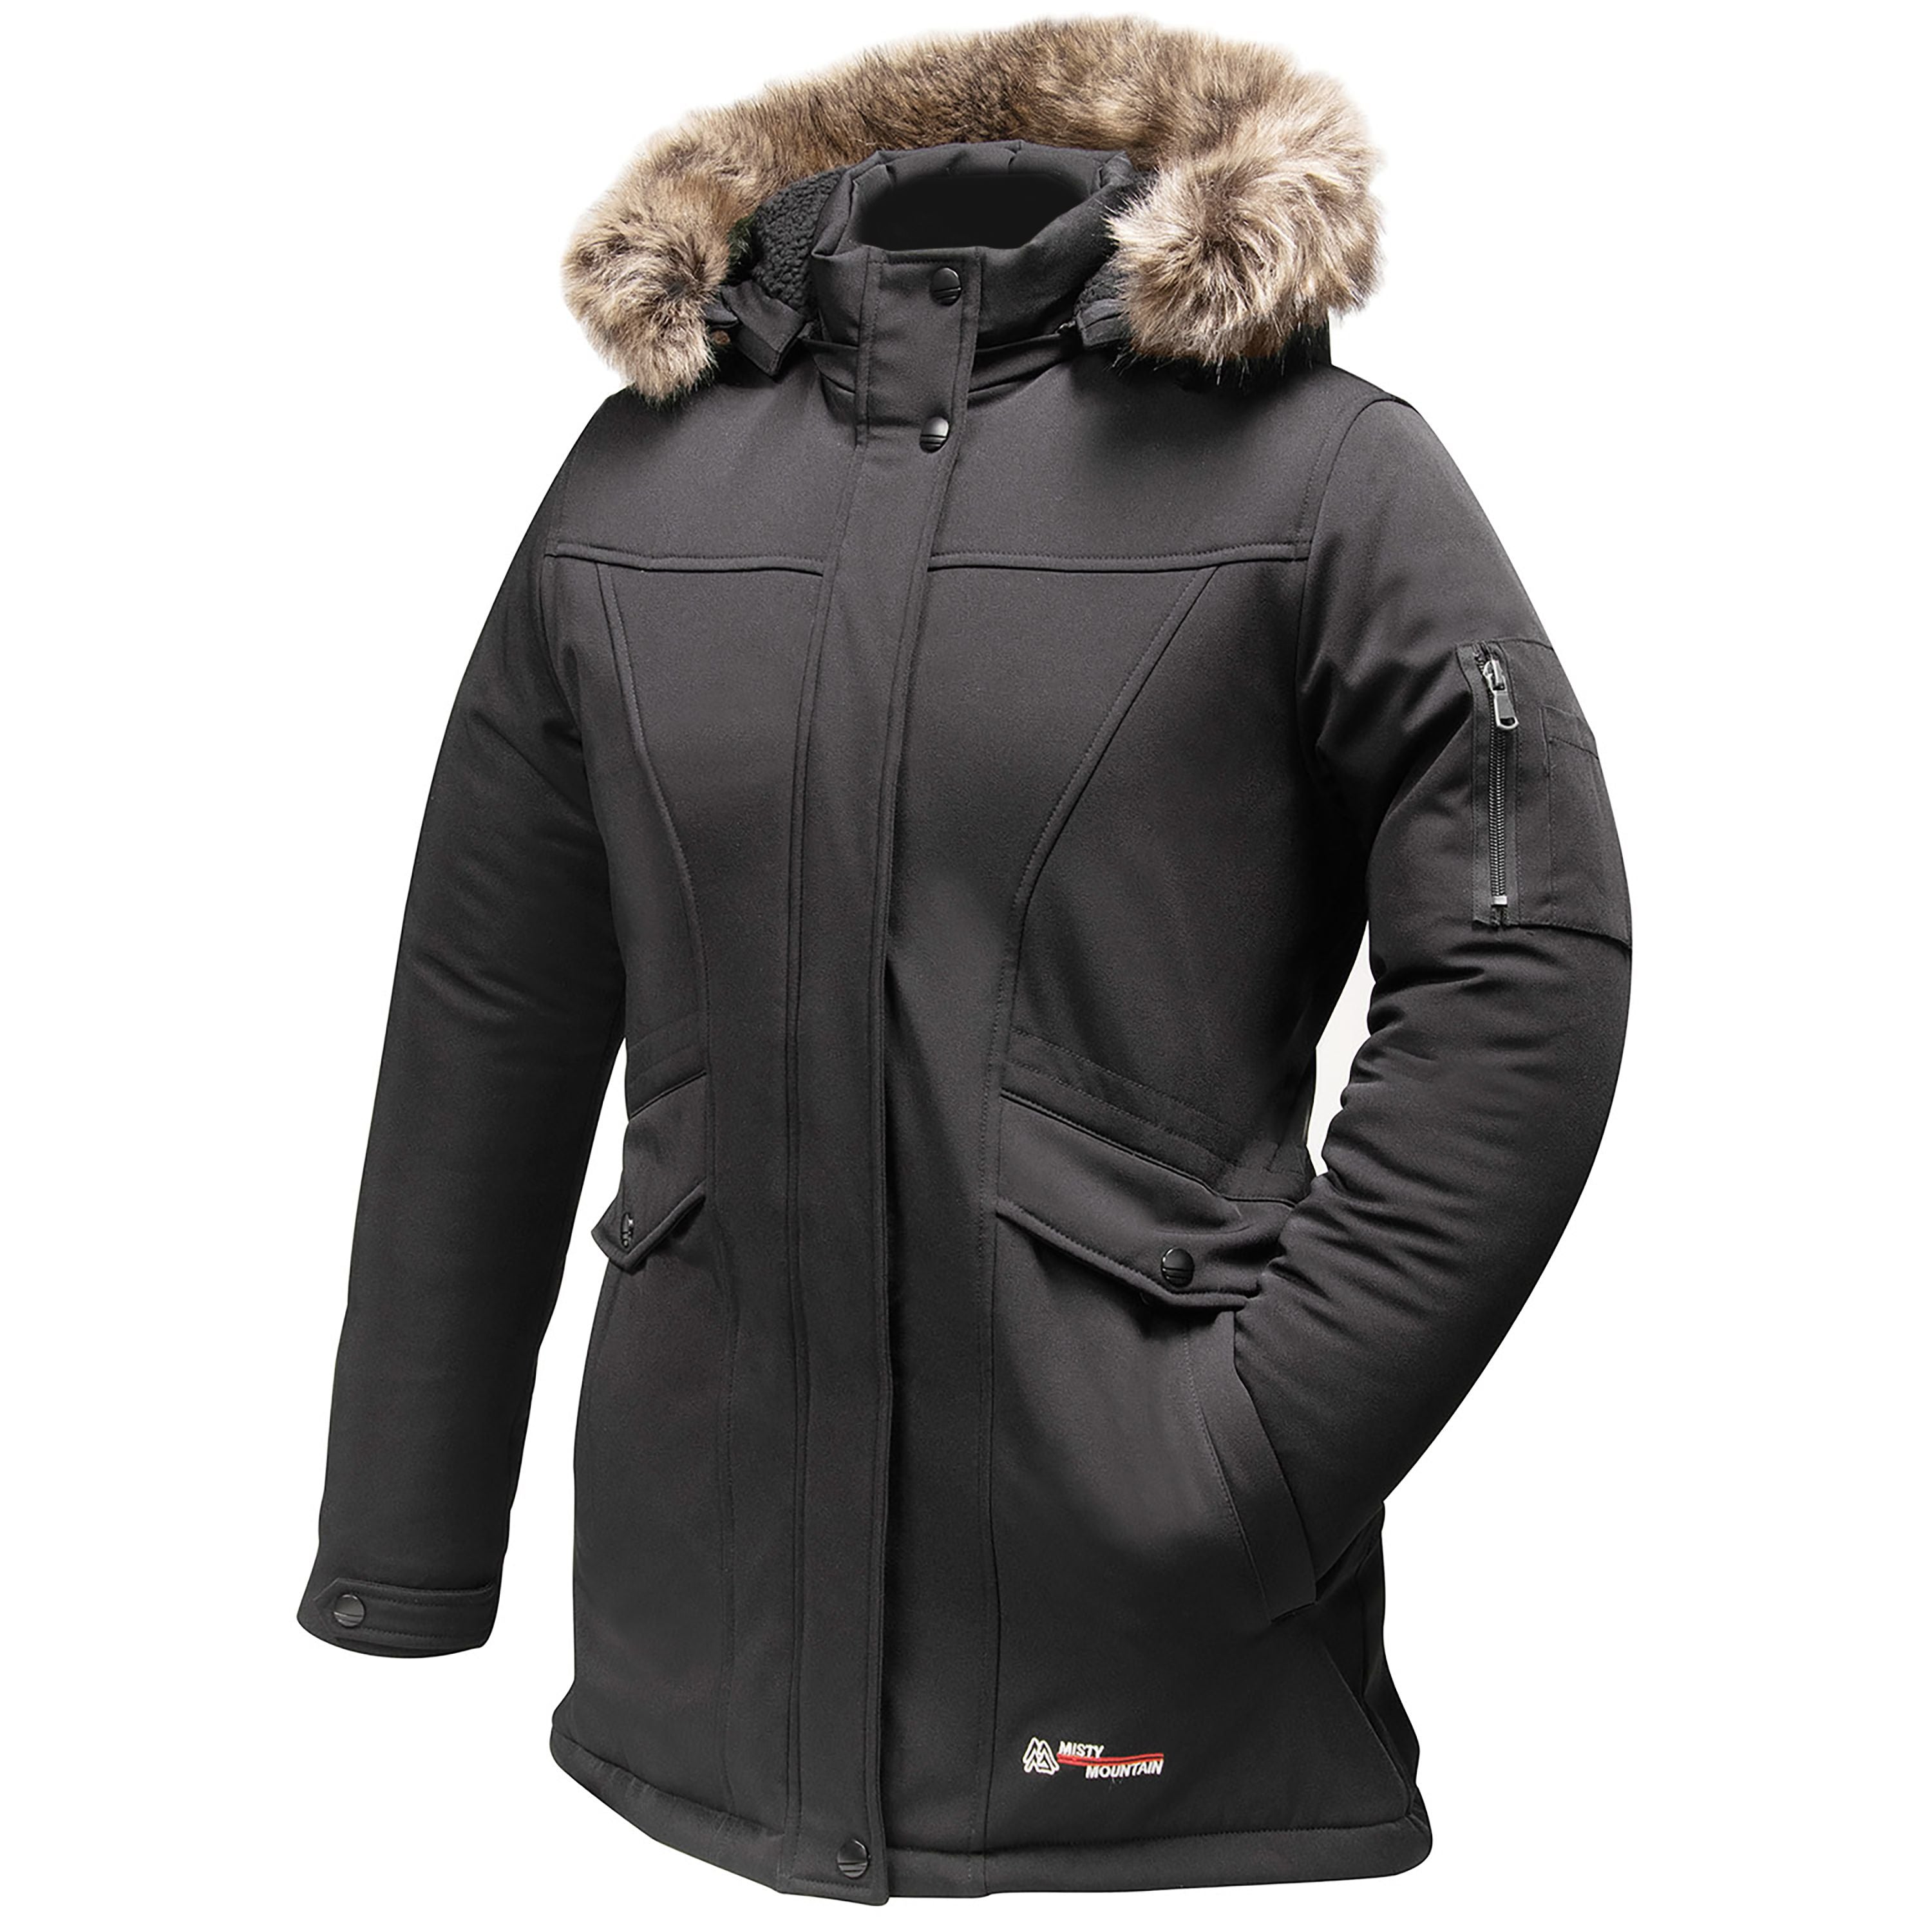 Manteau d’hiver "Glacier" - Femme||"Glacier" Winter jacket - Women’s